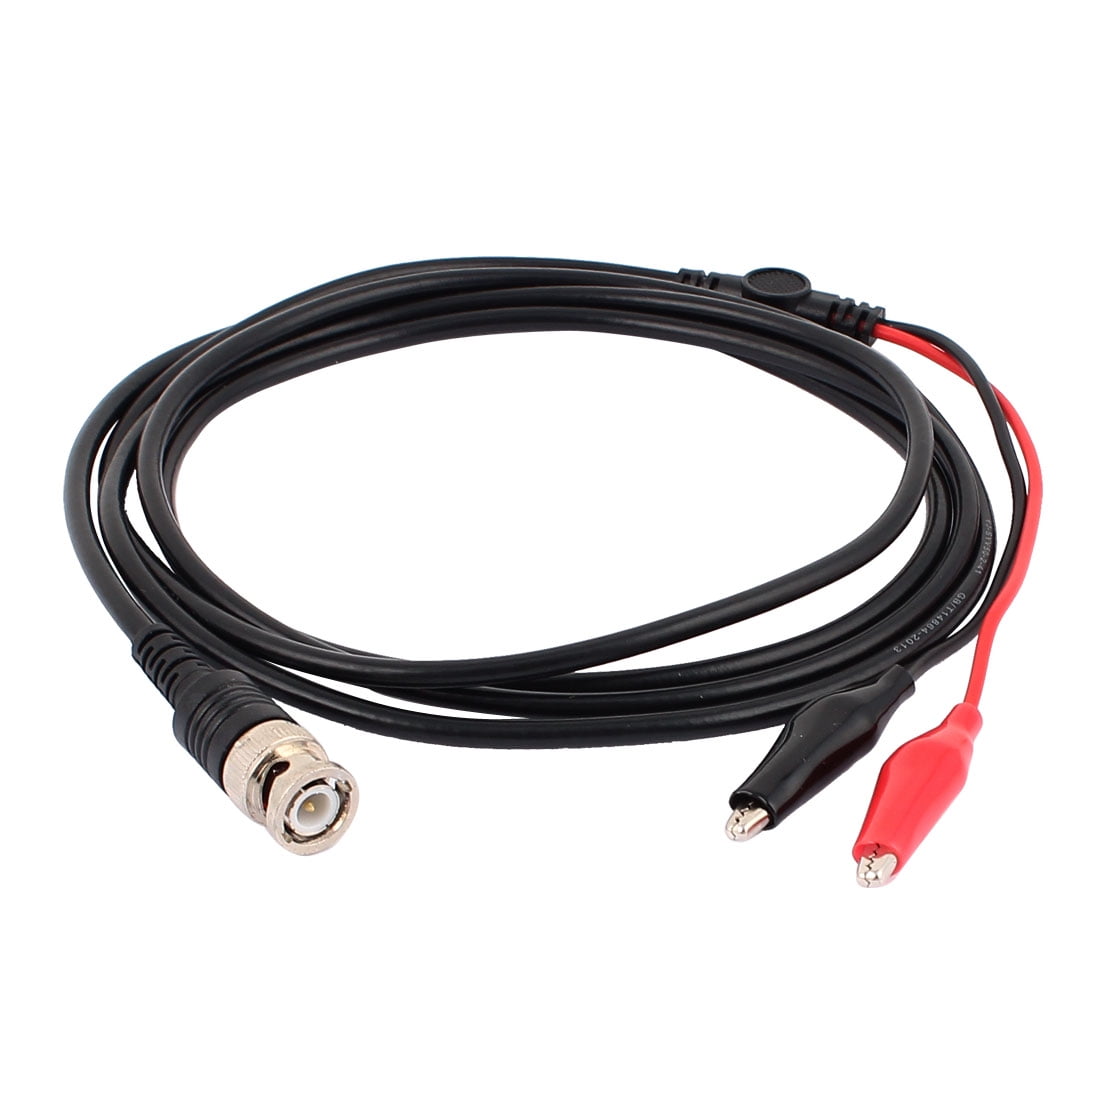 Brand New Cable Lead Oscilloscope Test Probe BNC Male Plug Dual Alligator Clip 